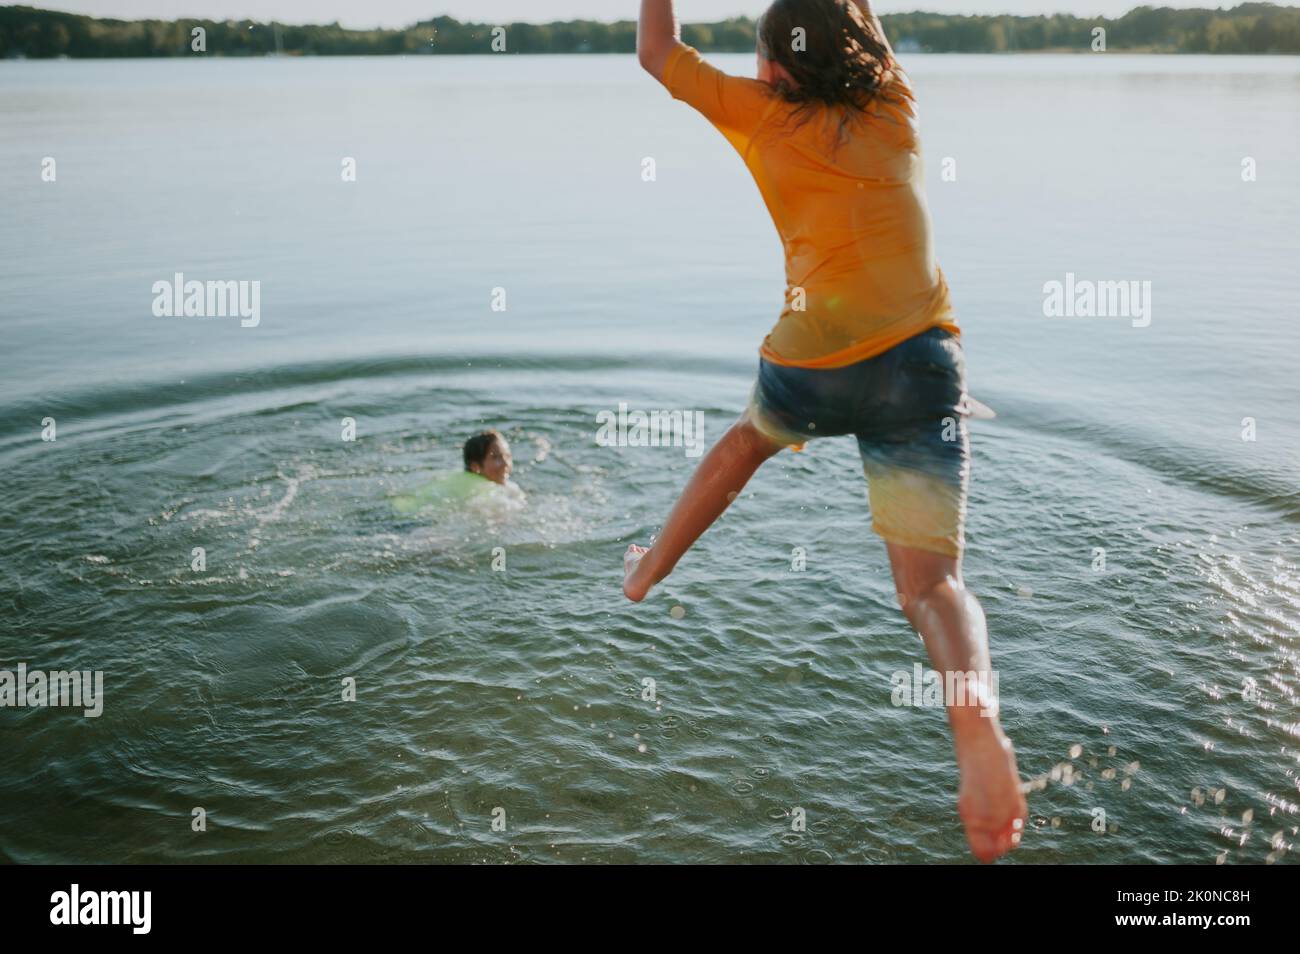 Junge springt vom Dock, während ein anderer Junge lächelt und im Wasser schwimmend Stockfoto